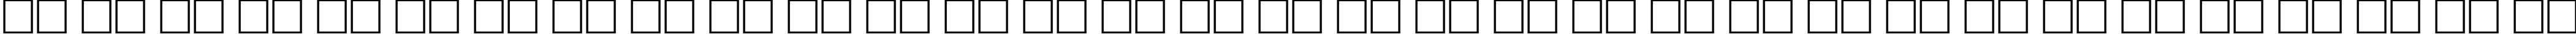 Пример написания русского алфавита шрифтом Cricket-Light